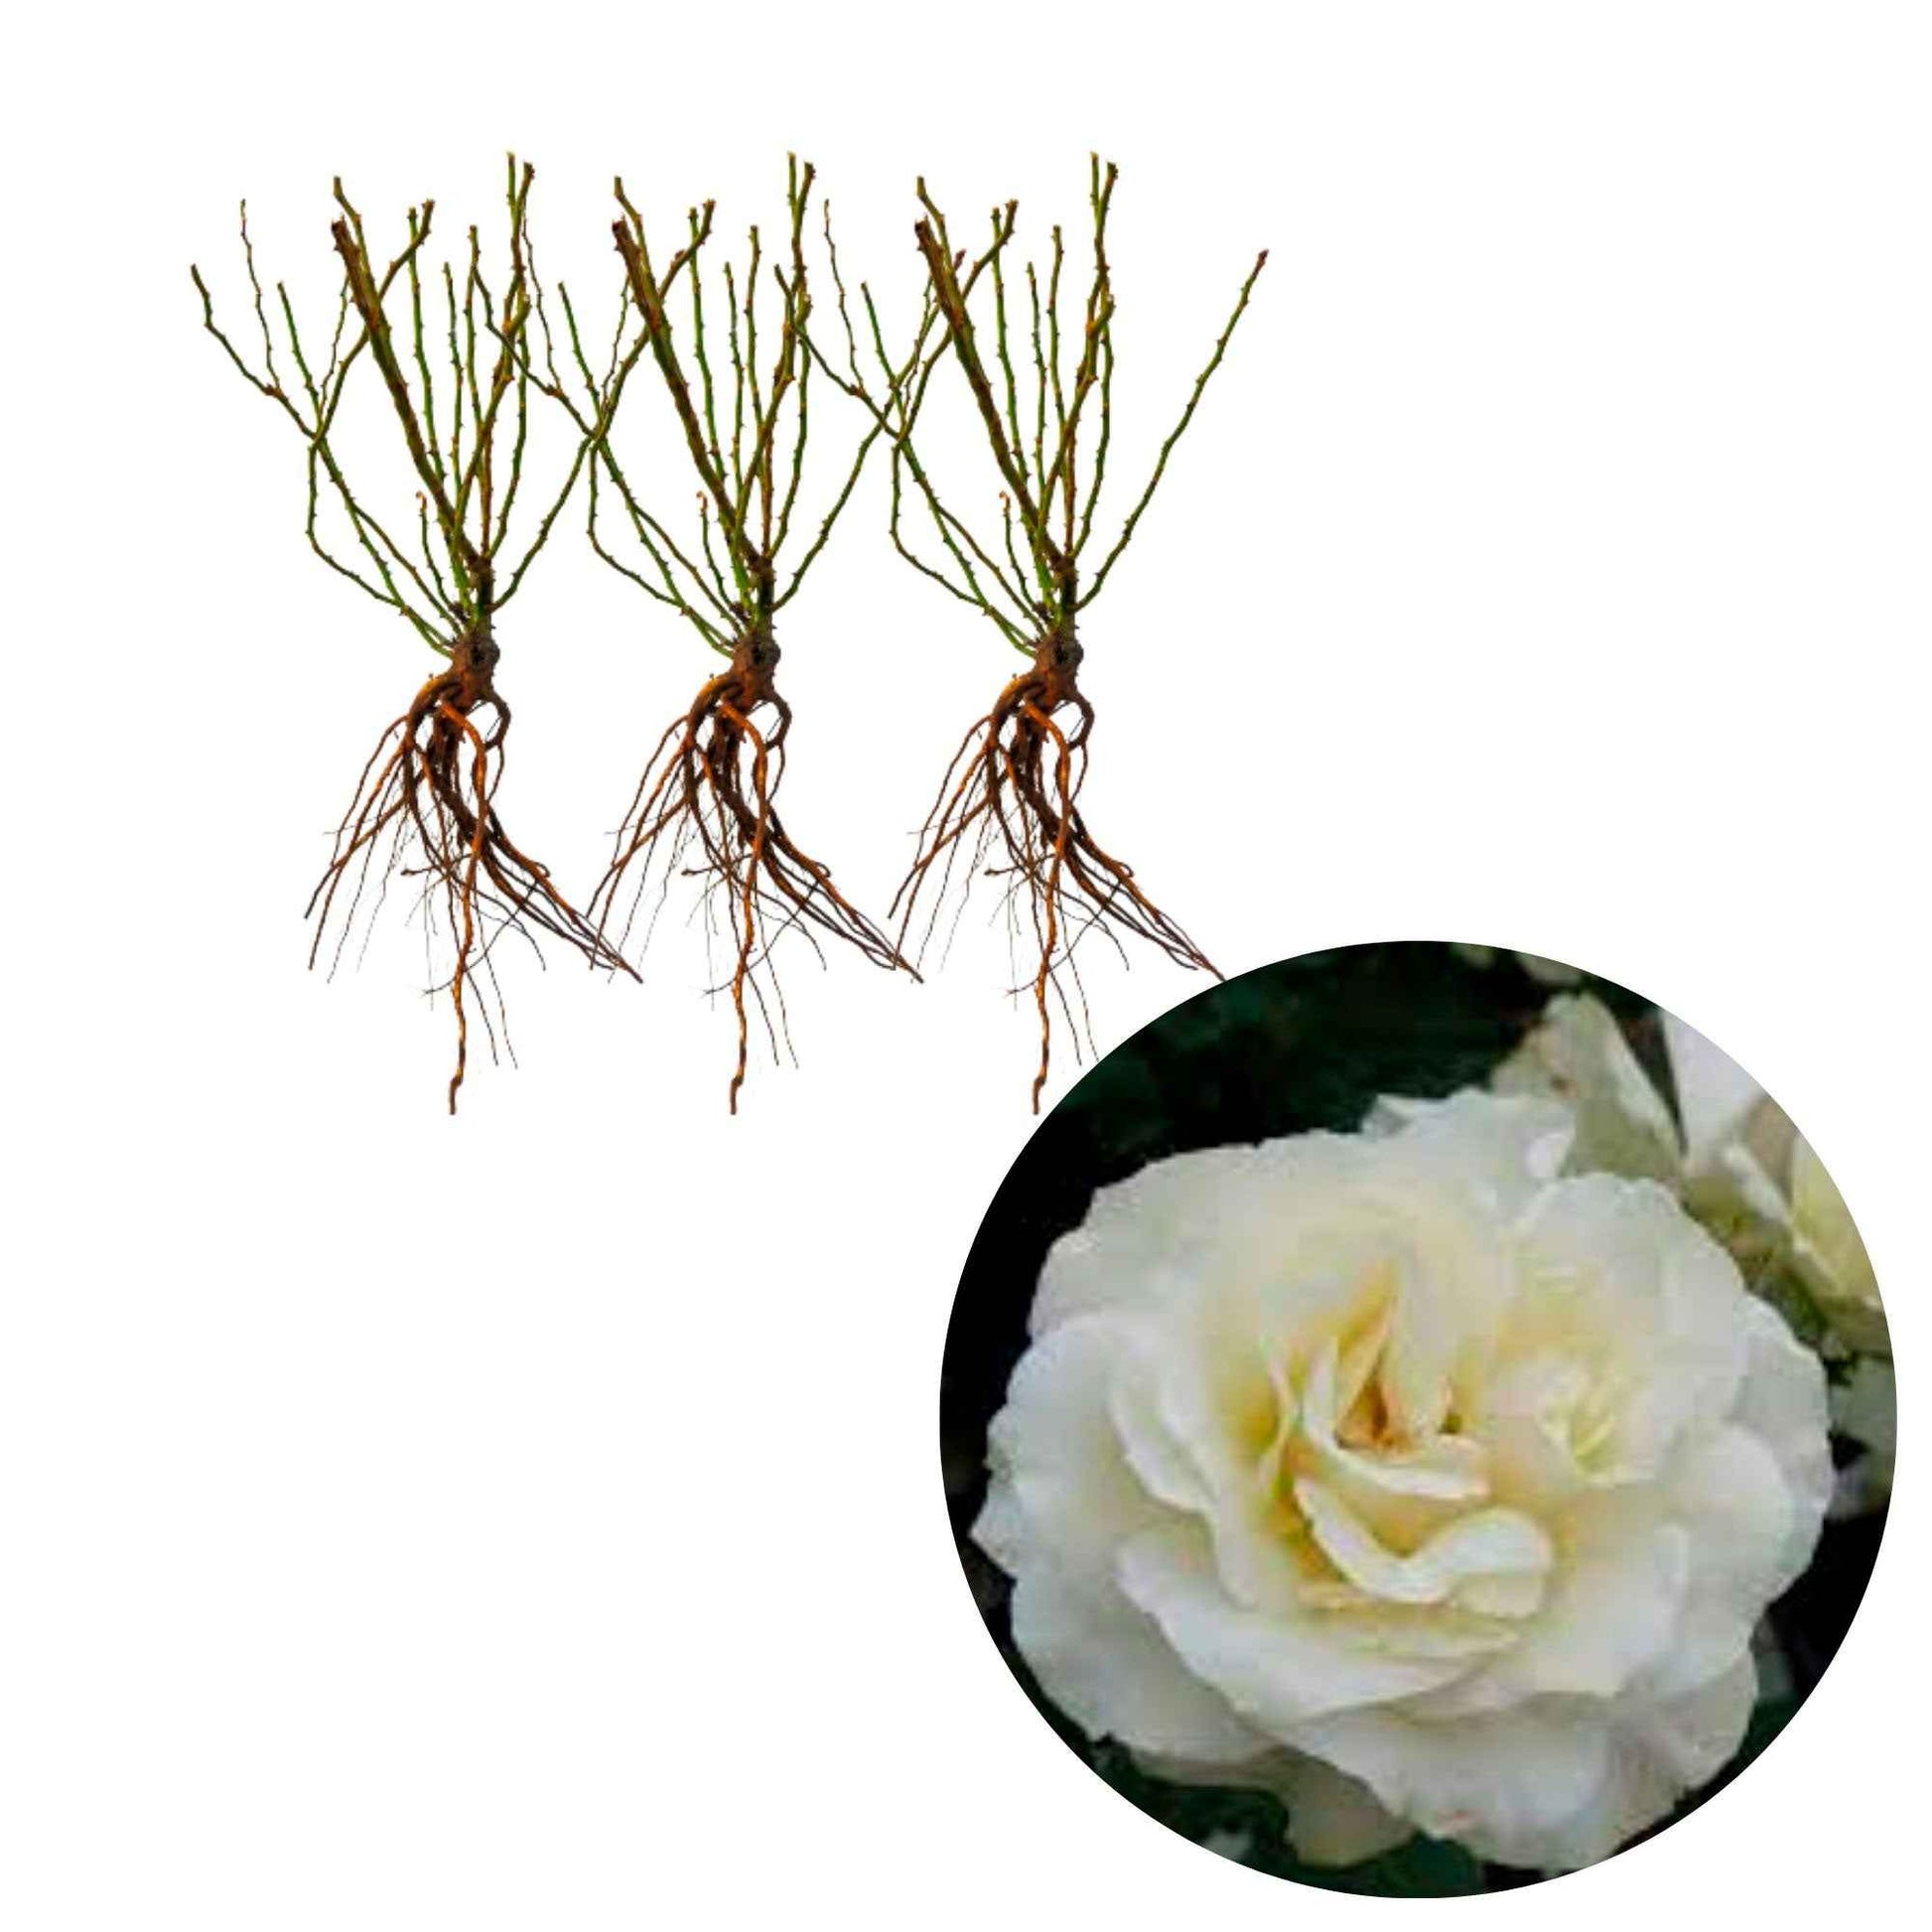 3x Rozen White Meilove ® Wit - Bare rooted - Winterhard - Plant eigenschap